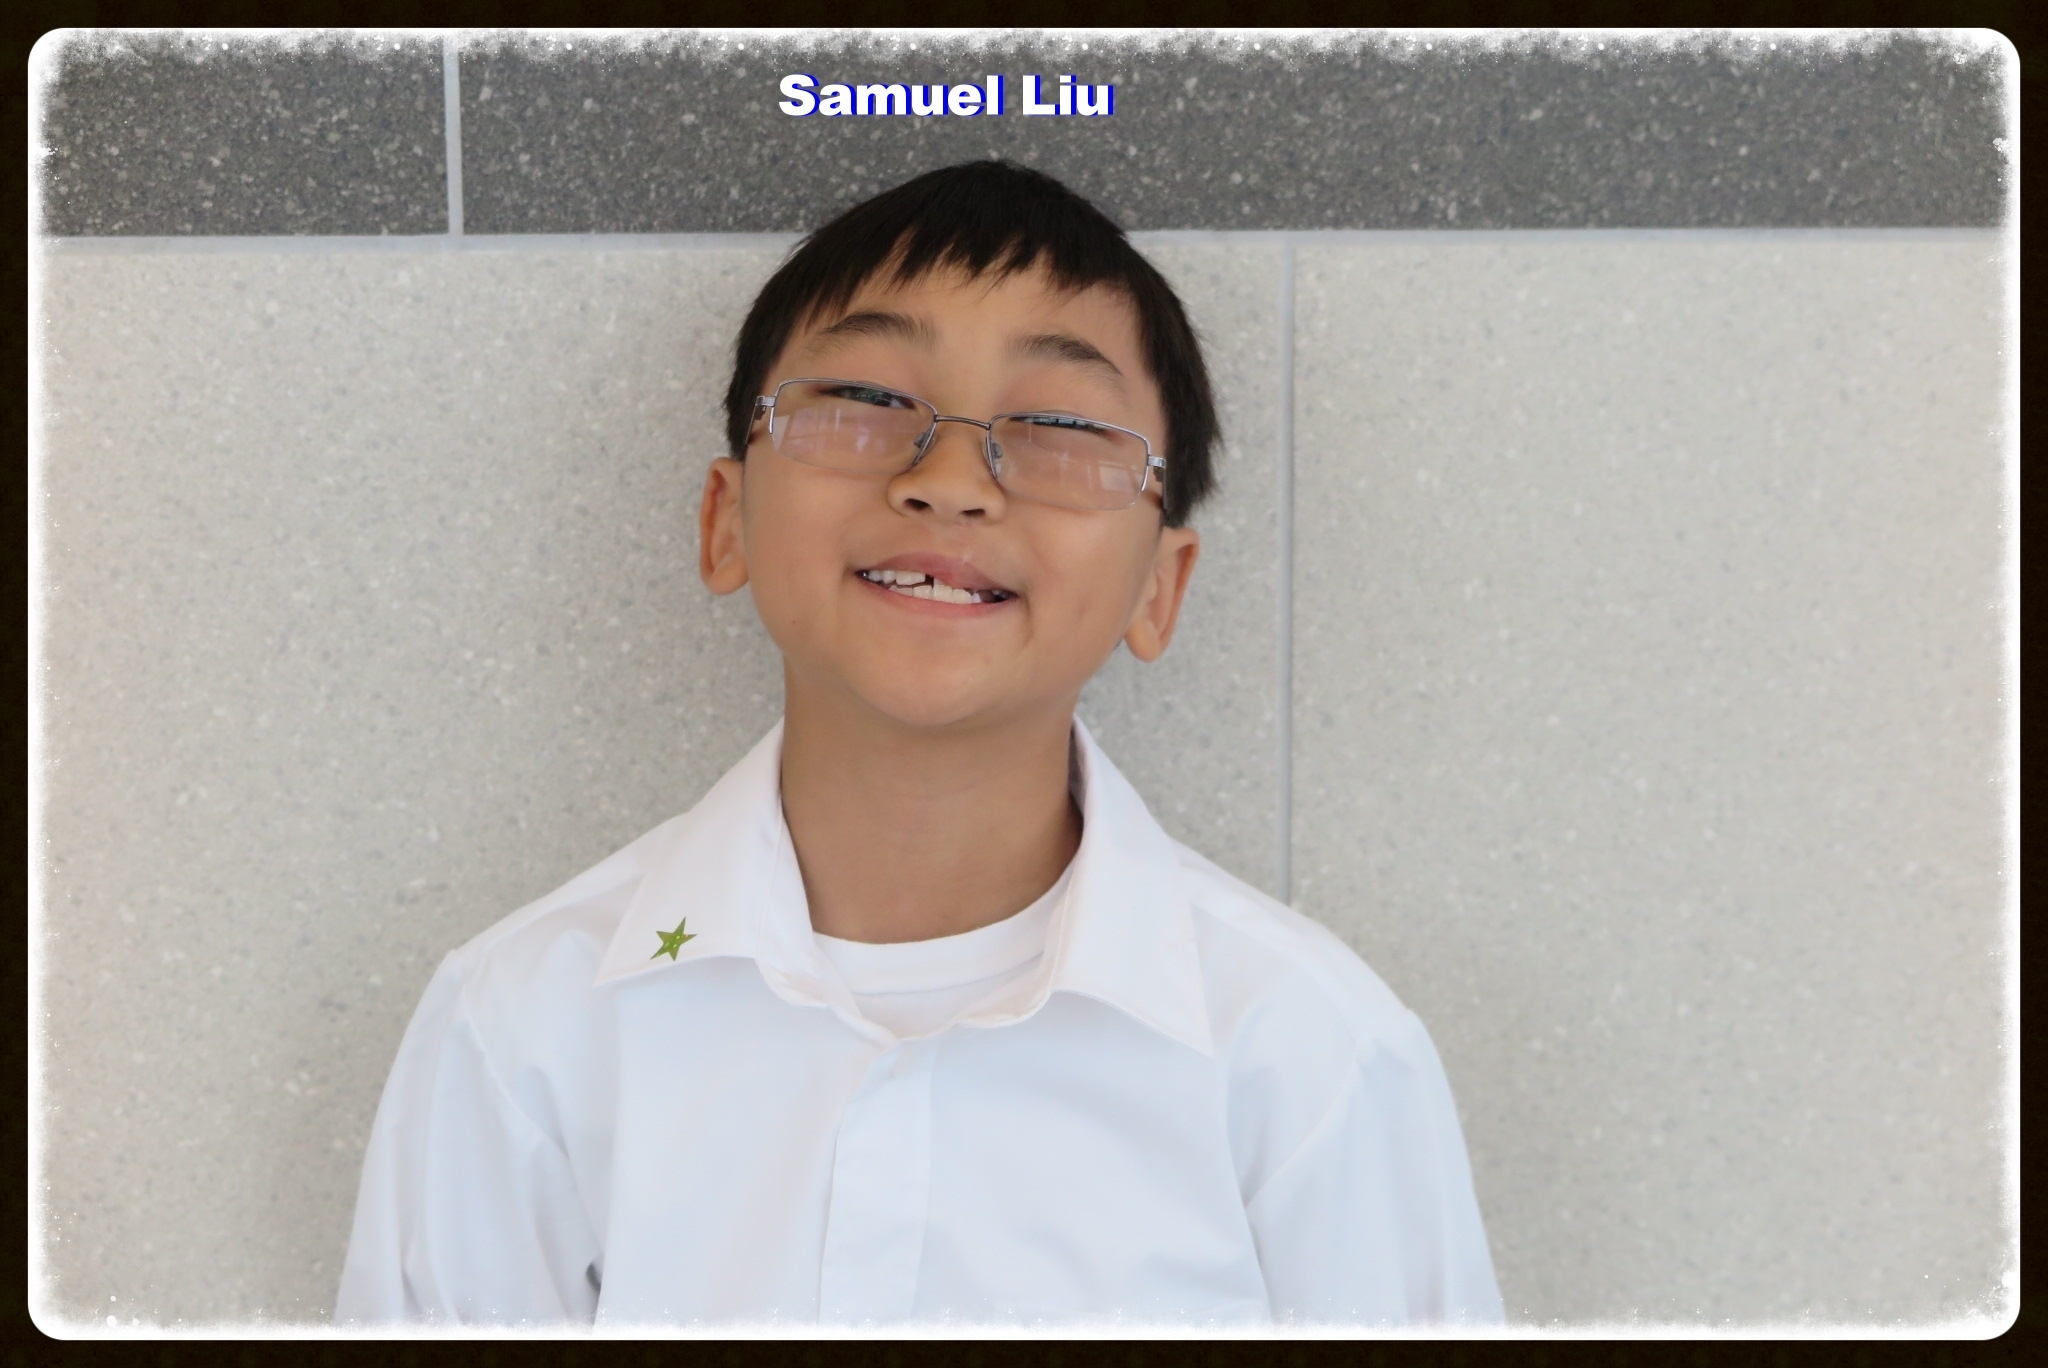 4. Samuel Liu (48).JPG